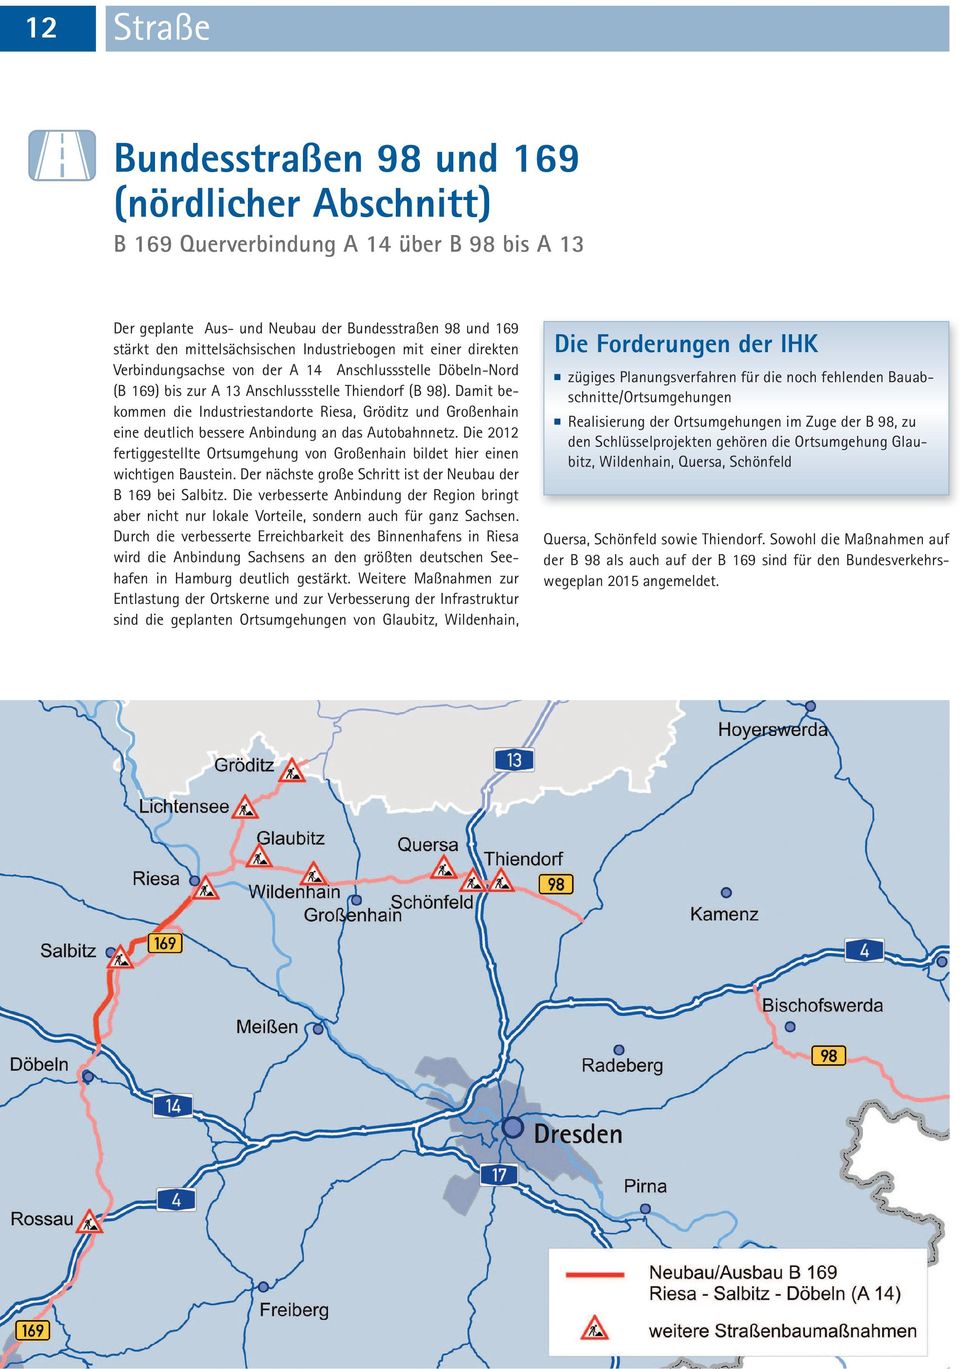 Damit bekommen die Industriestandorte Riesa, Gröditz und Großenhain eine deutlich bessere Anbindung an das Autobahnnetz.